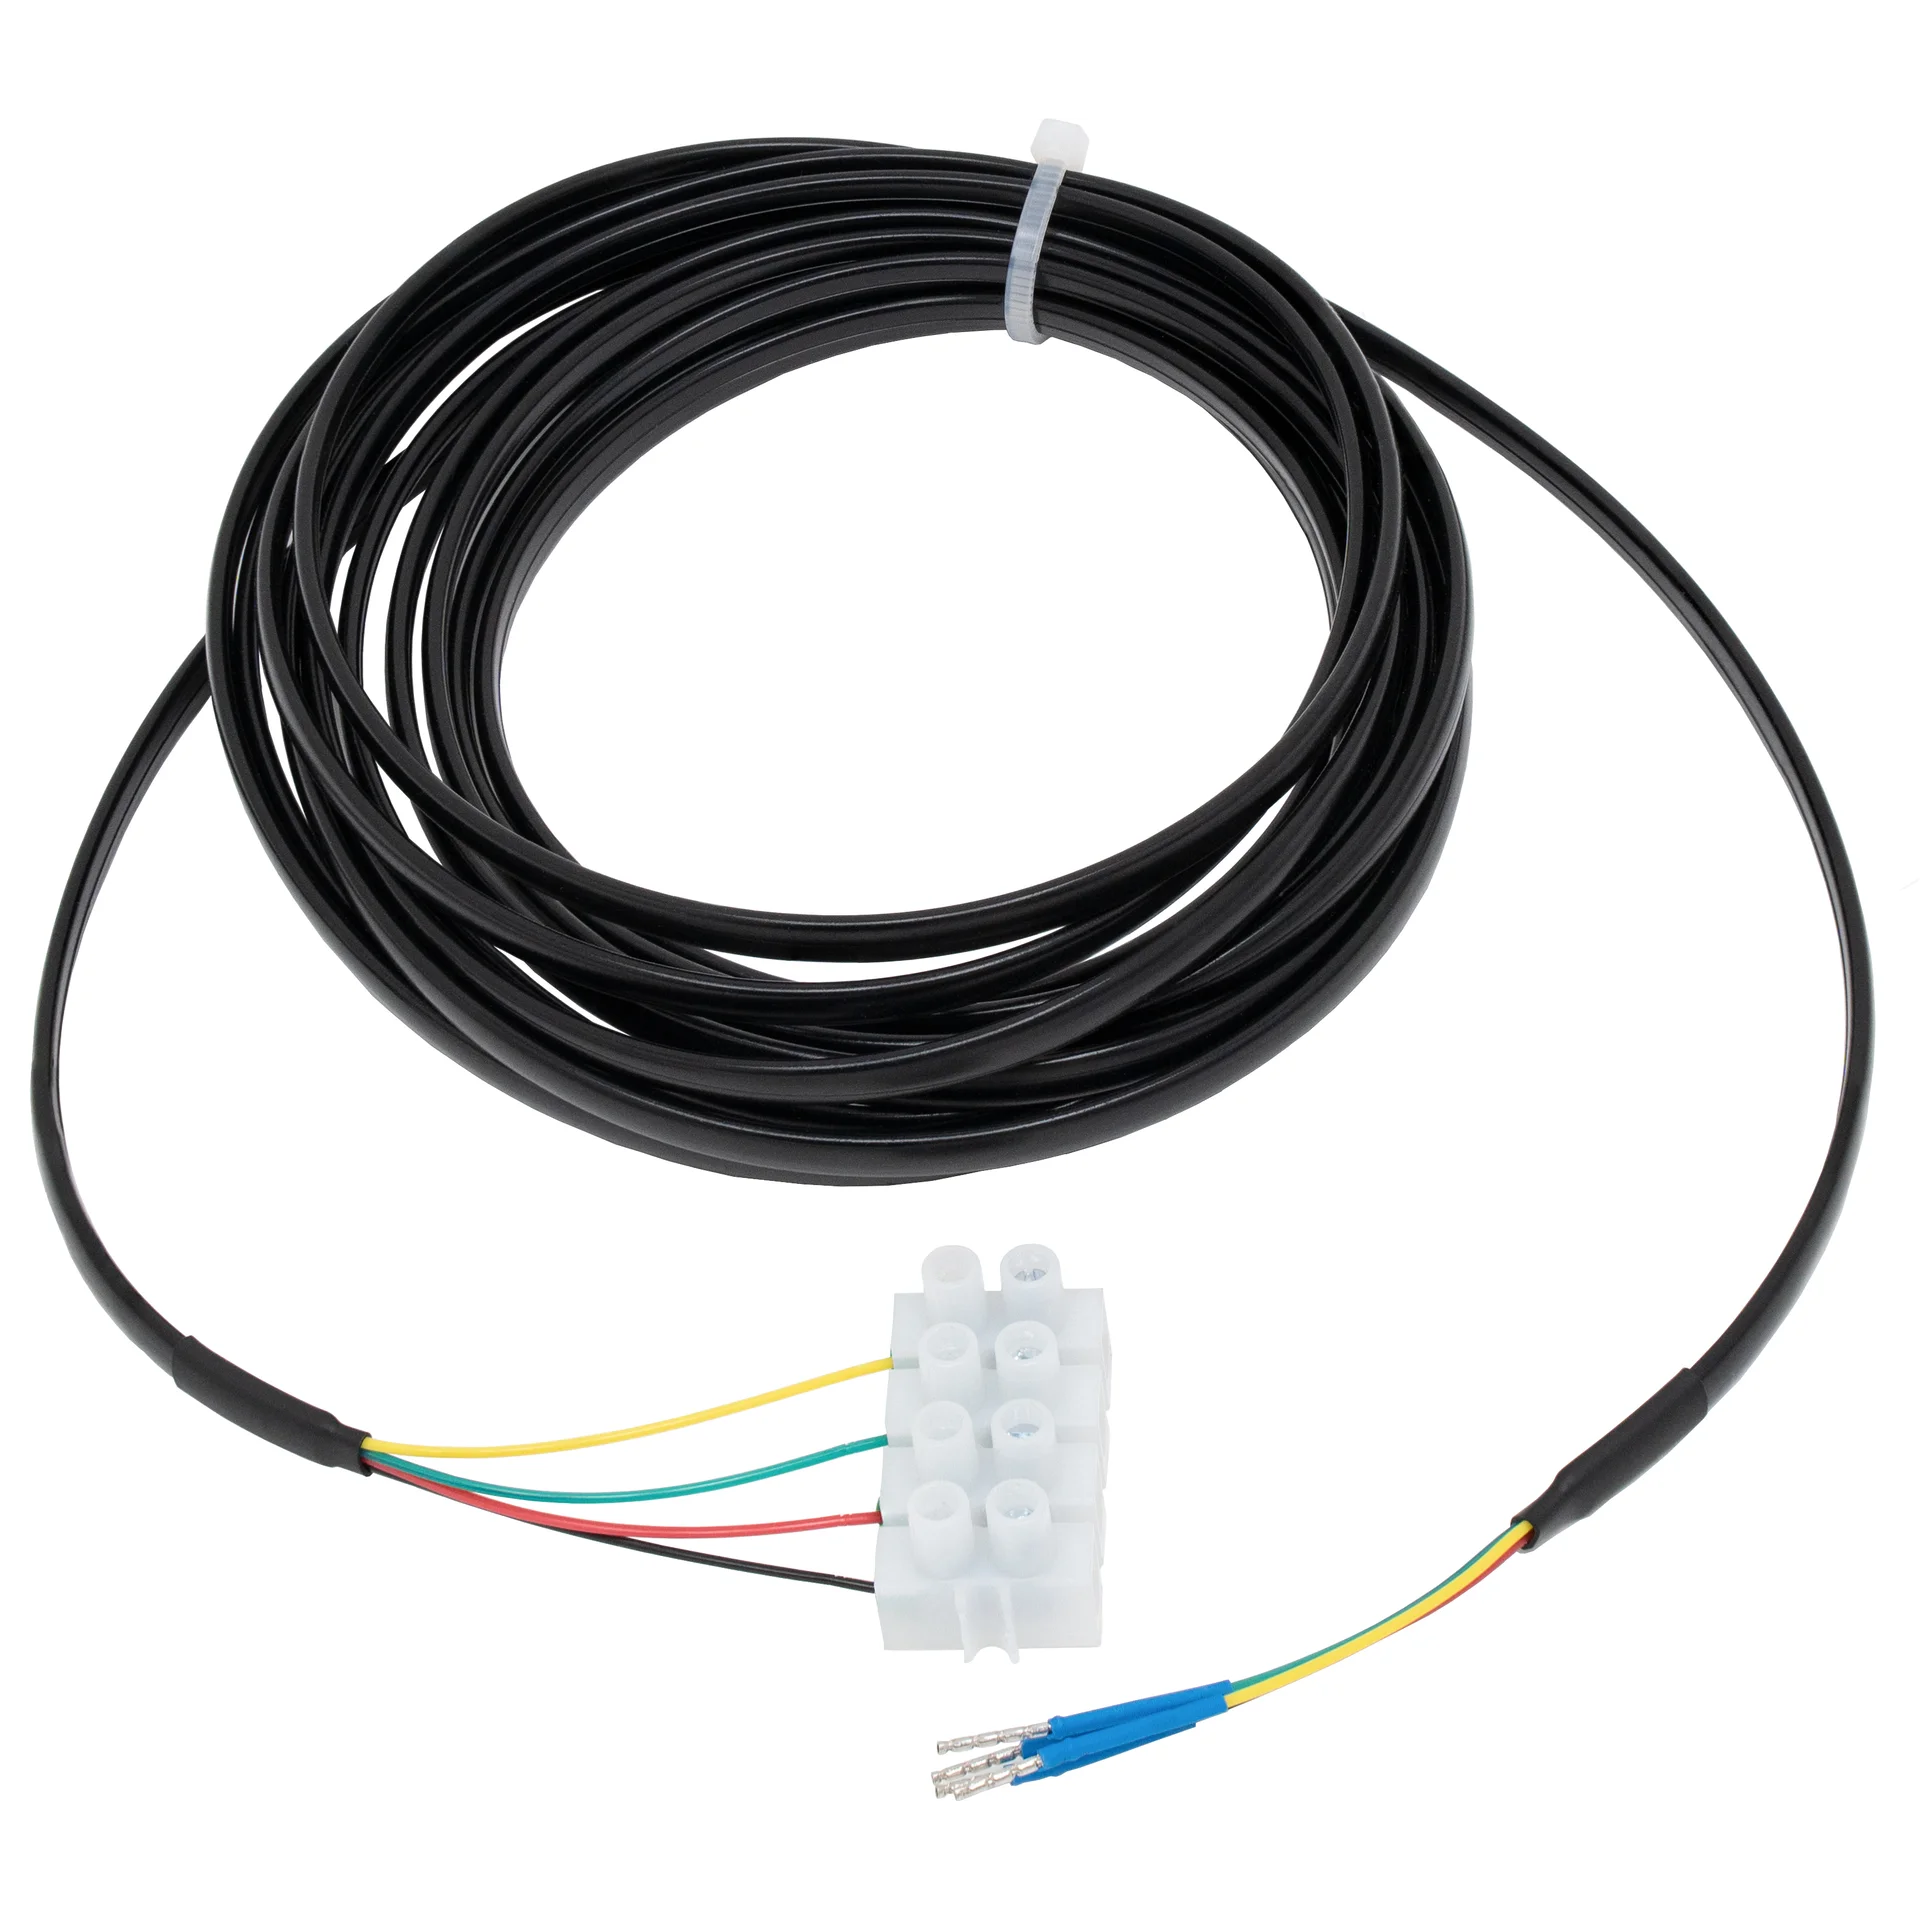 snr-cable-rc-4m - Позволяет увеличить длину шлейфа датчика на 4 м. Удлинители можно включать последовательно друг в друга для достижения нужной длины шлейфа датчика. (аналог netping RC) купить в Казани 	Удлинитель представляет собой 4-х проводный кабель с клеммником на одной стороне и наконечниками дл